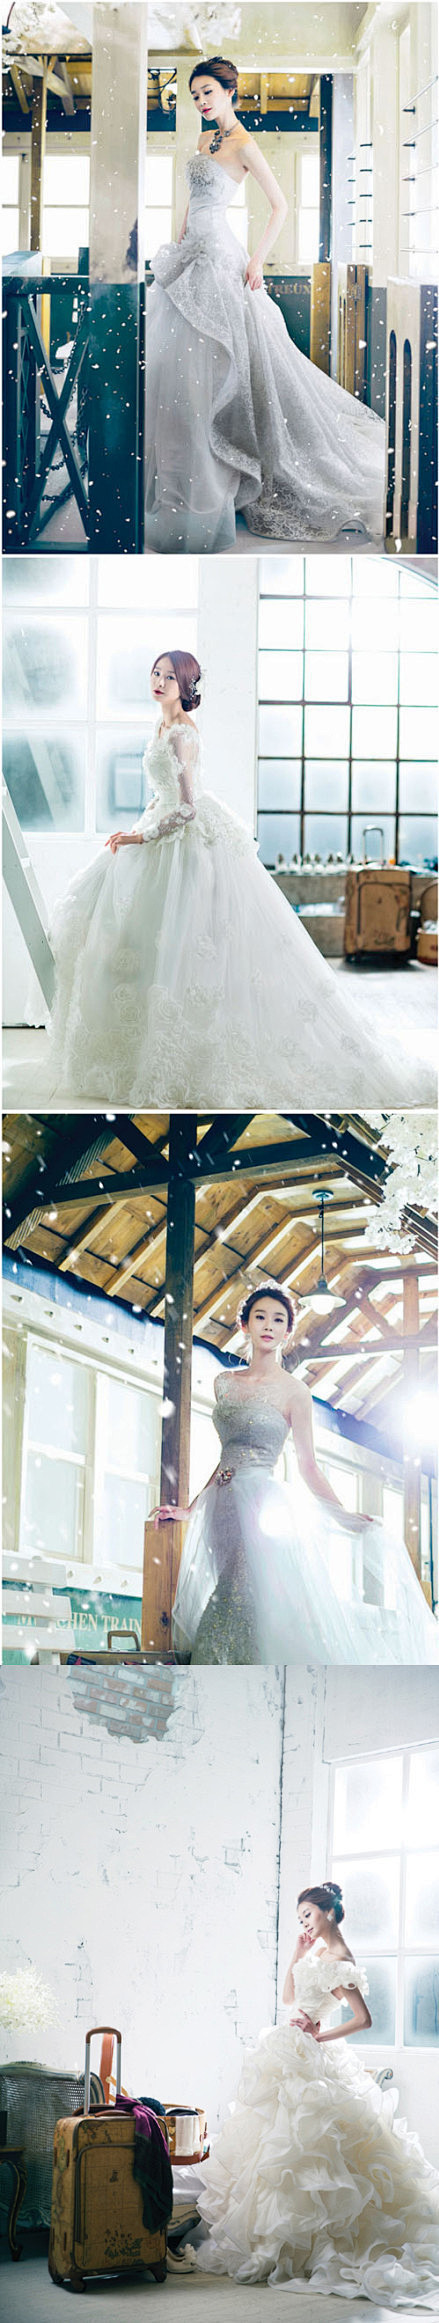 韩式婚纱